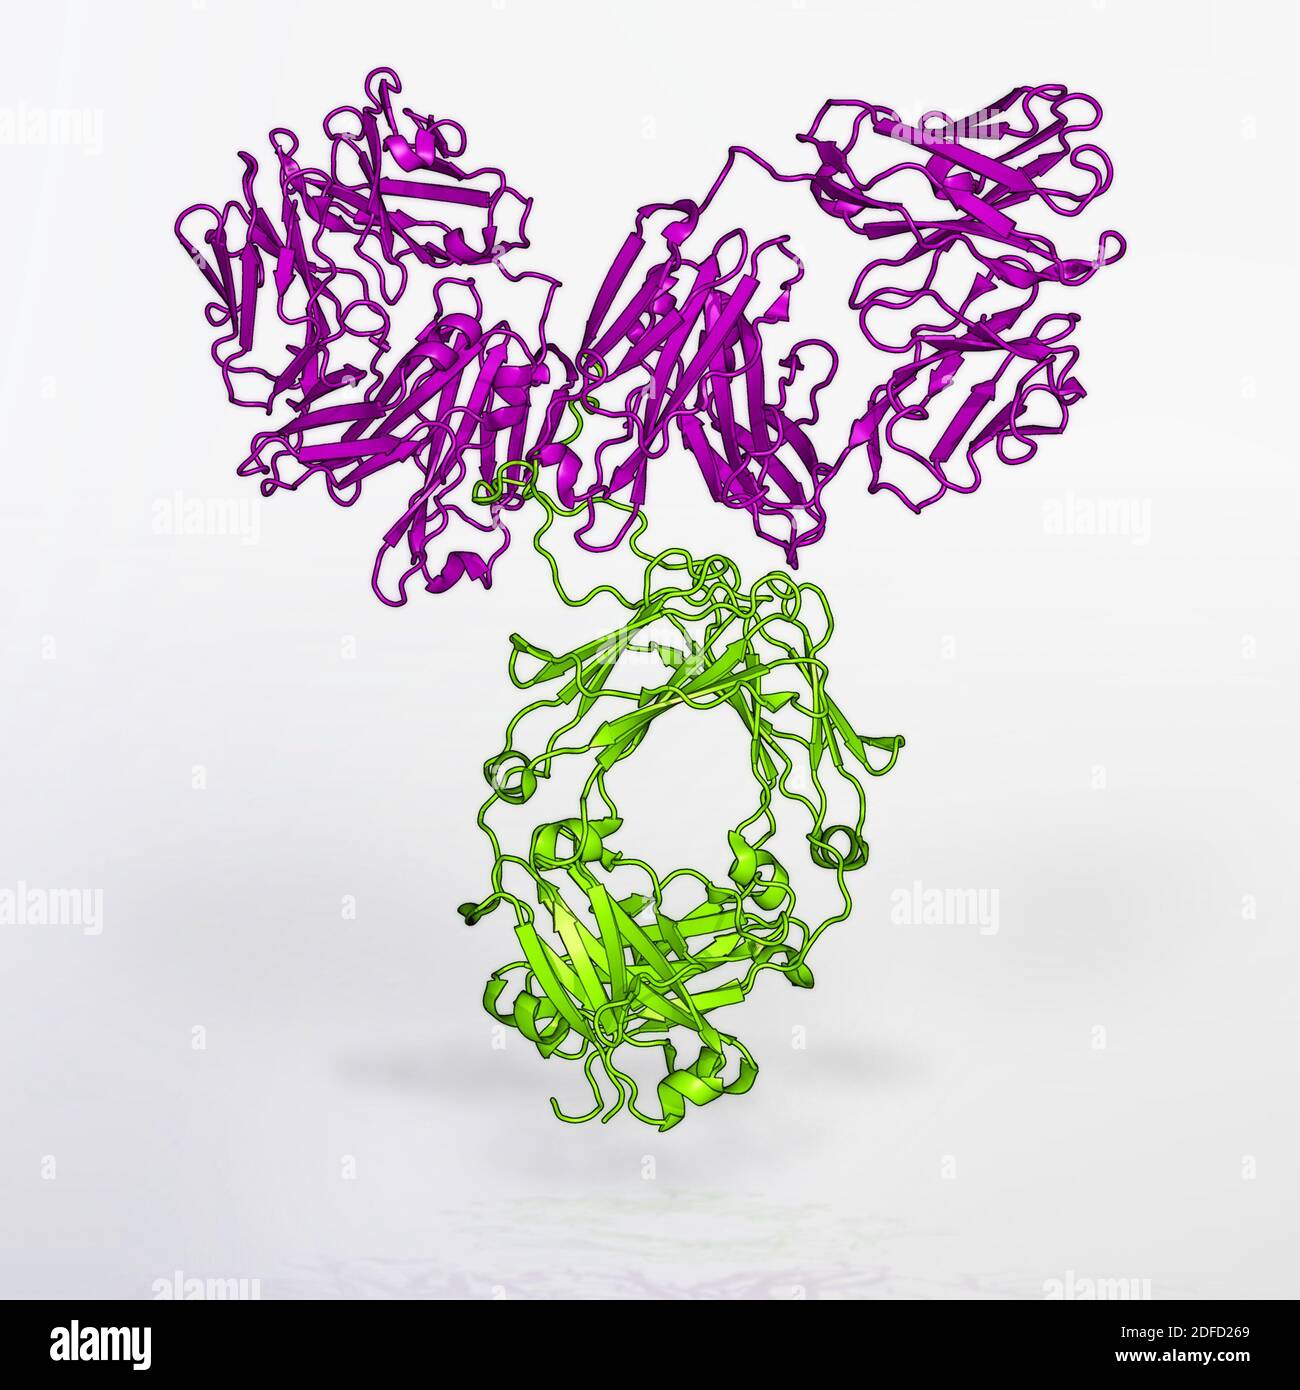 Modell des vrc01-Antikörpers Stockfoto